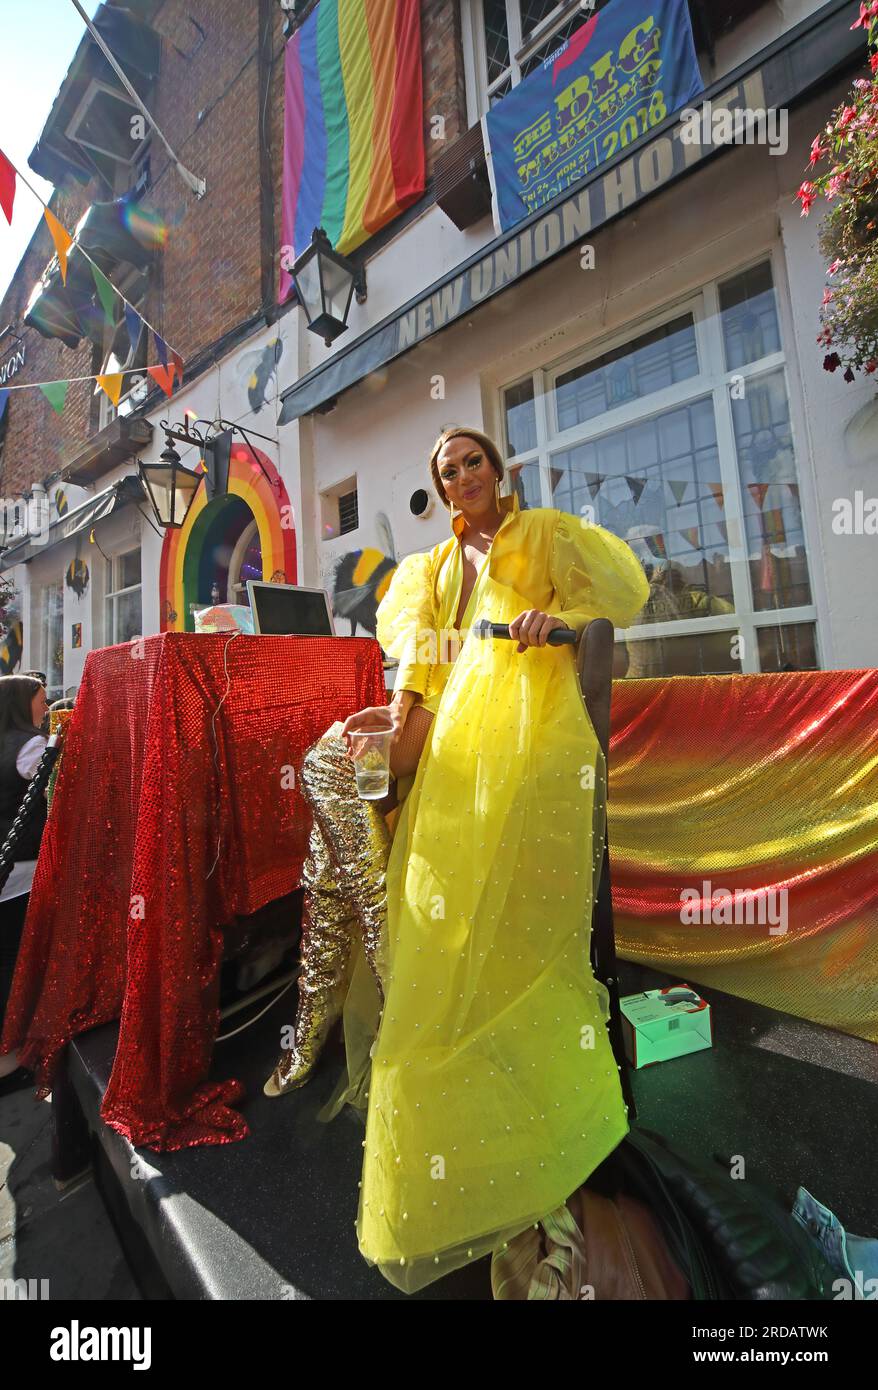 Profiter du Manchester Pride Festival, vacances bancaires au mois d'août au New Union Hotel, gay Village, 111 Princess St, Manchester, Angleterre, ROYAUME-UNI, M1 6JB Banque D'Images